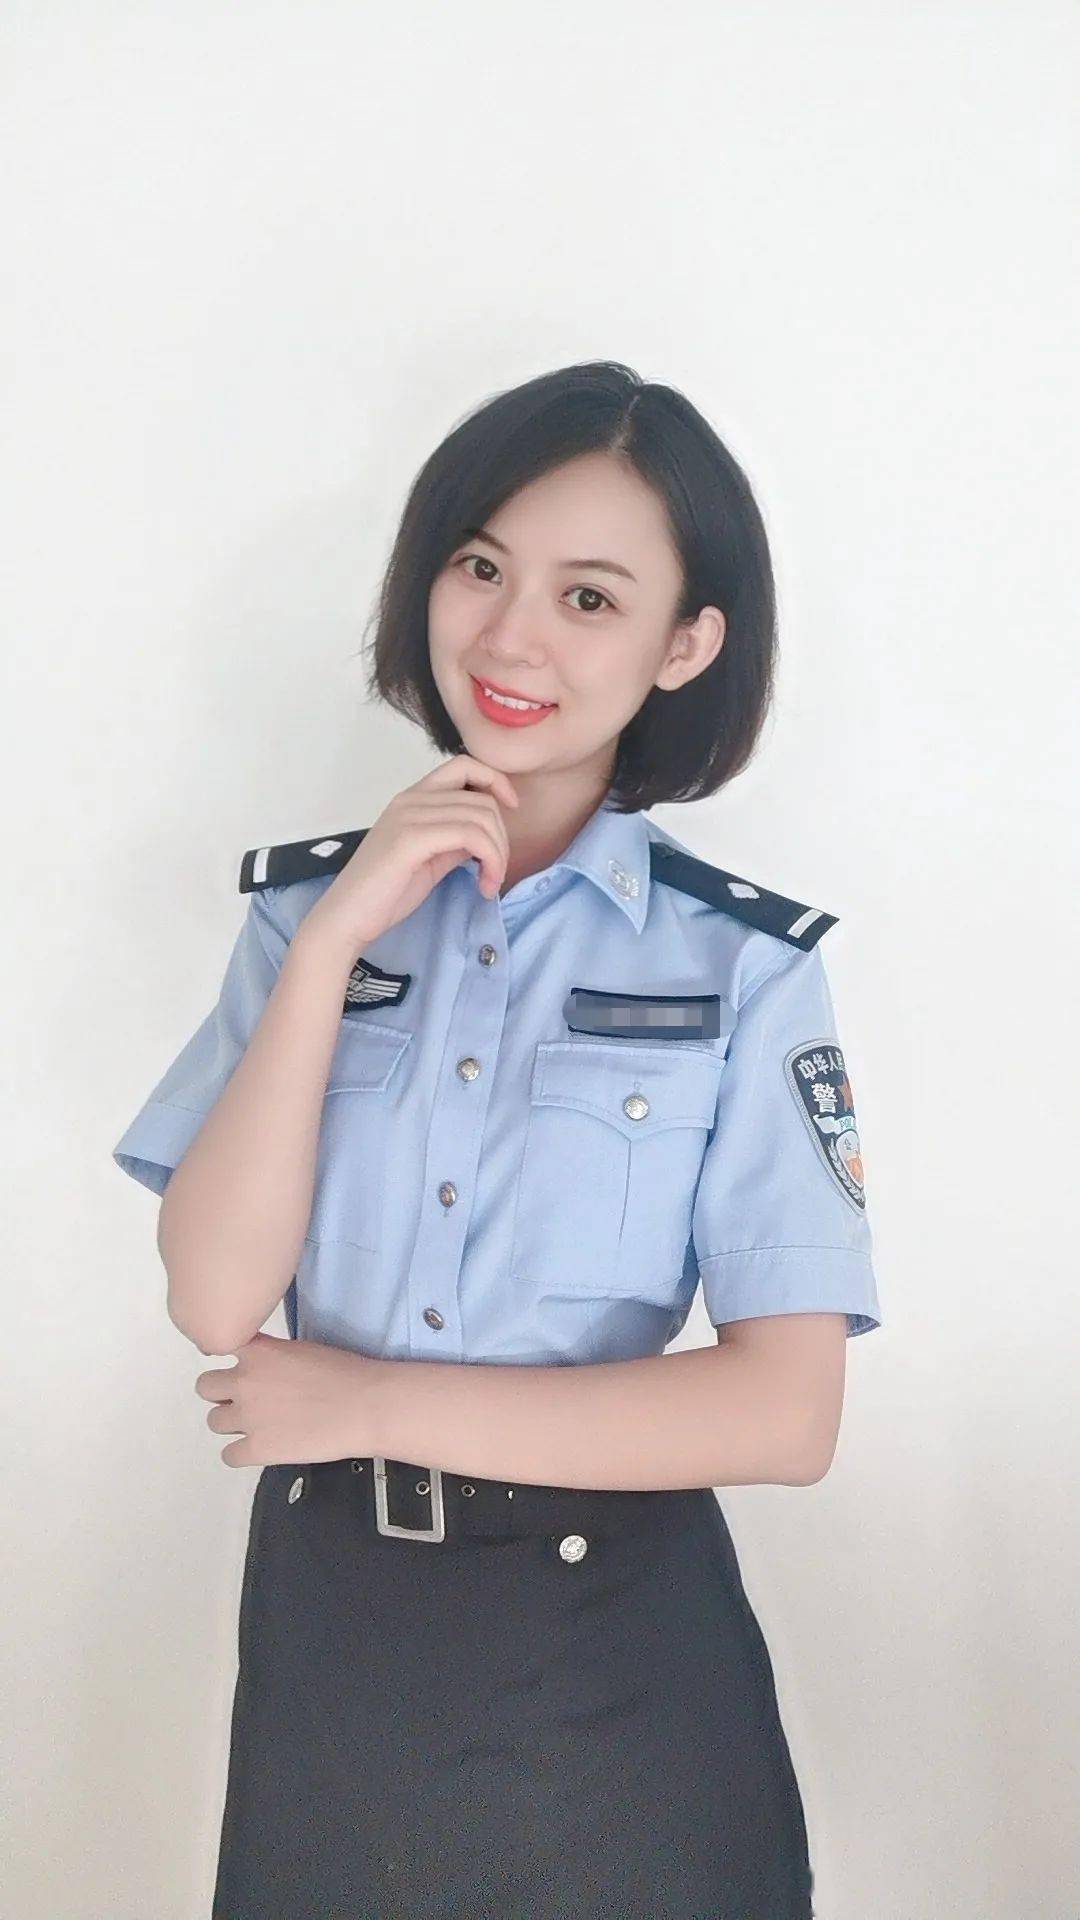 是云南警官学院毕业的!